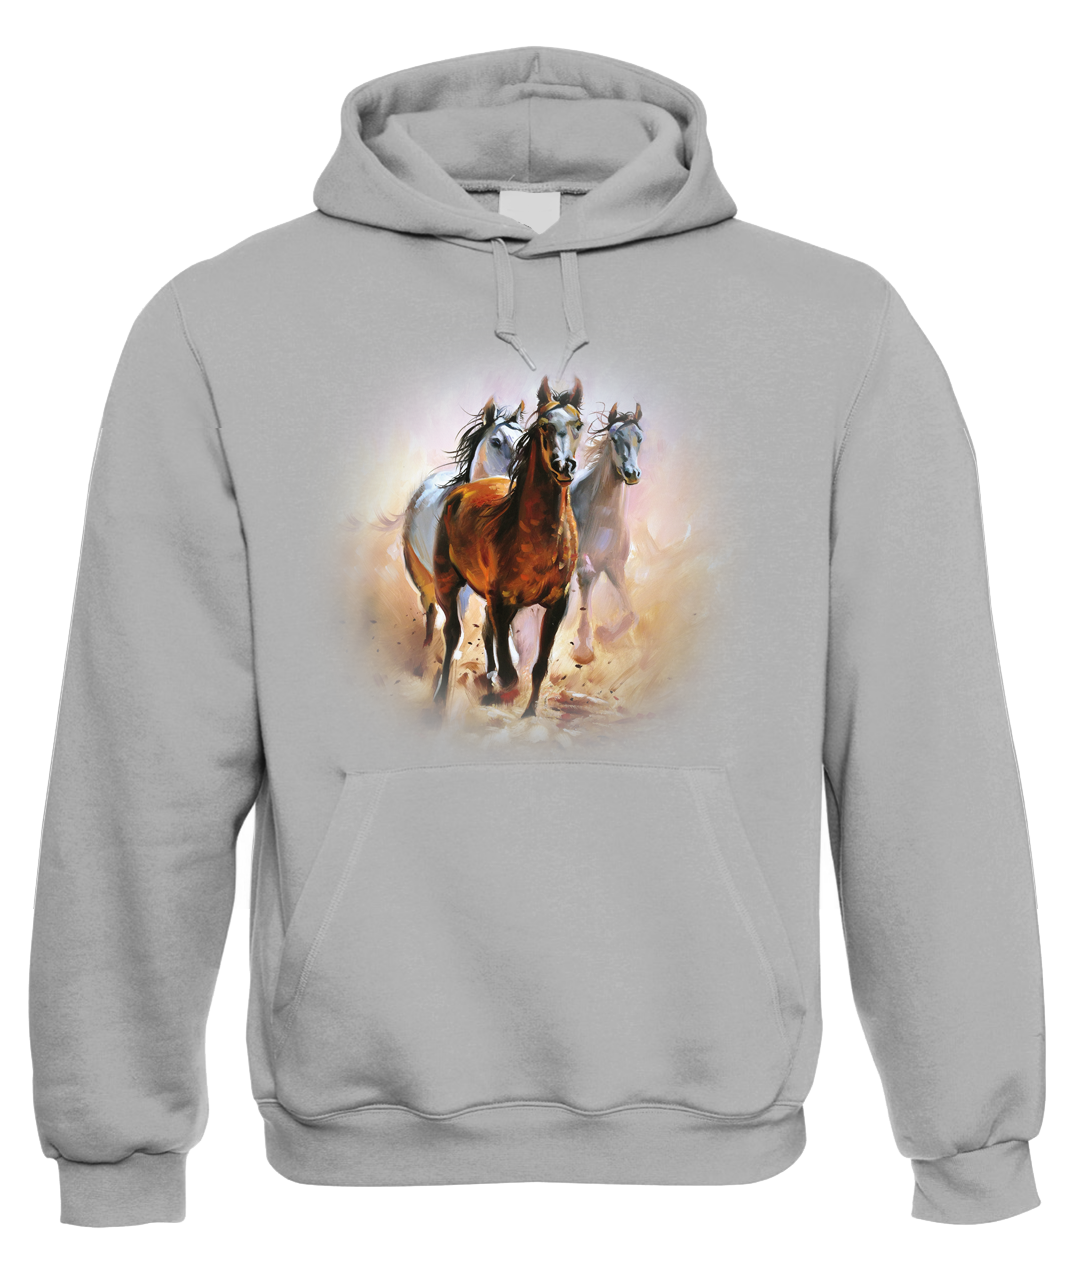 Mikina s koněm - Malované koně Velikost: M, Barva: Šedá